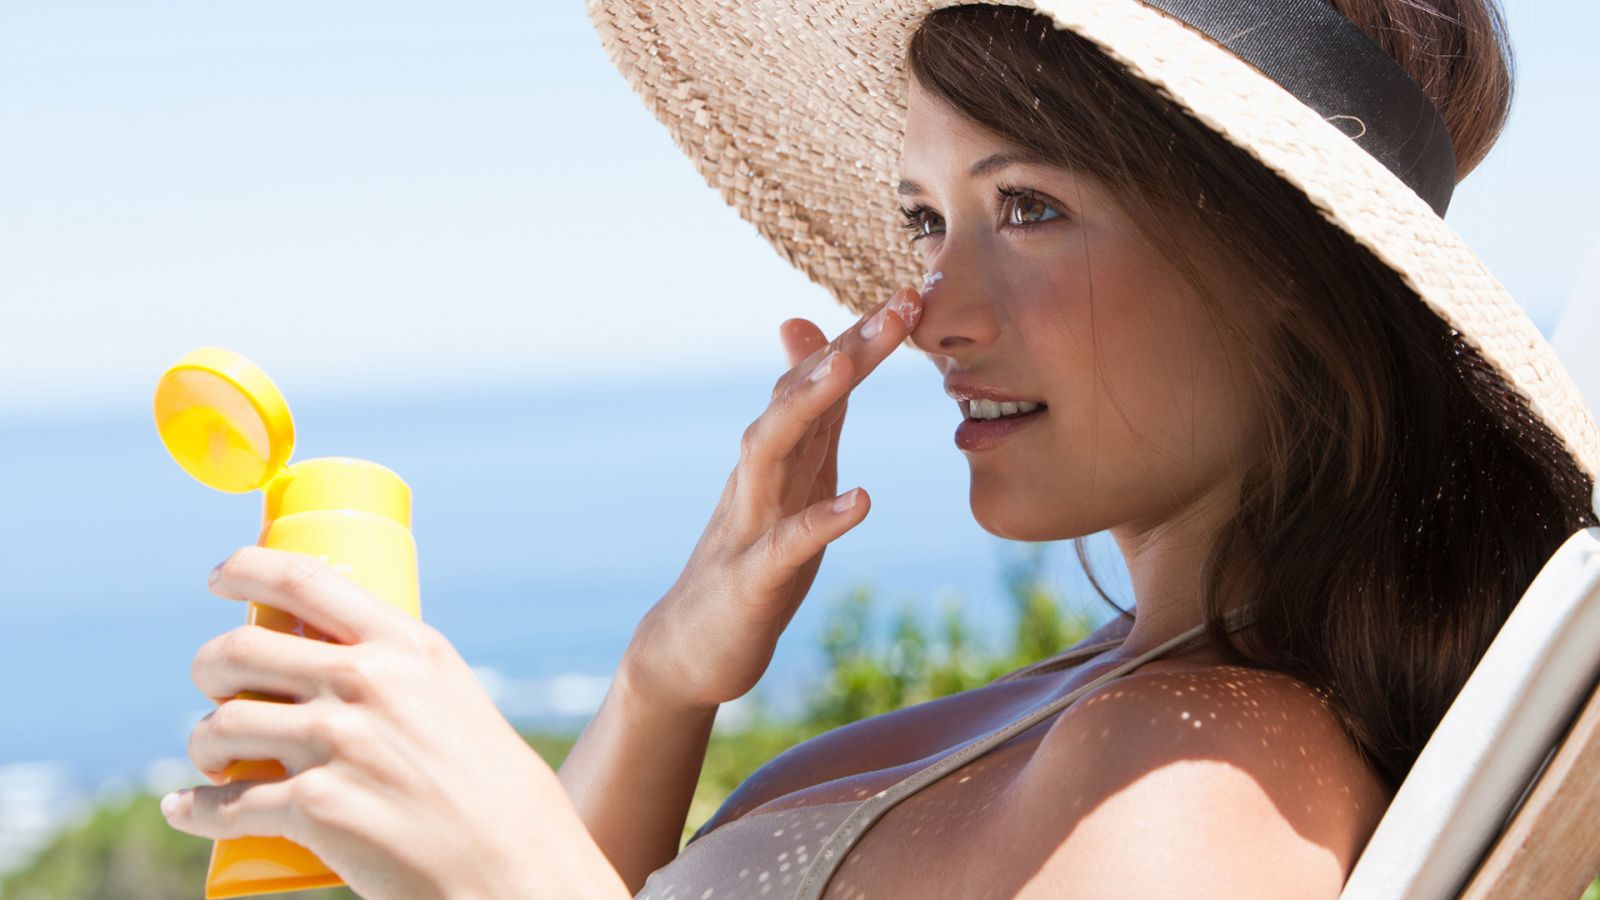   Trước khi chăm sóc da,chúng ta cần bảo vệ da bằng kem chống nắng  